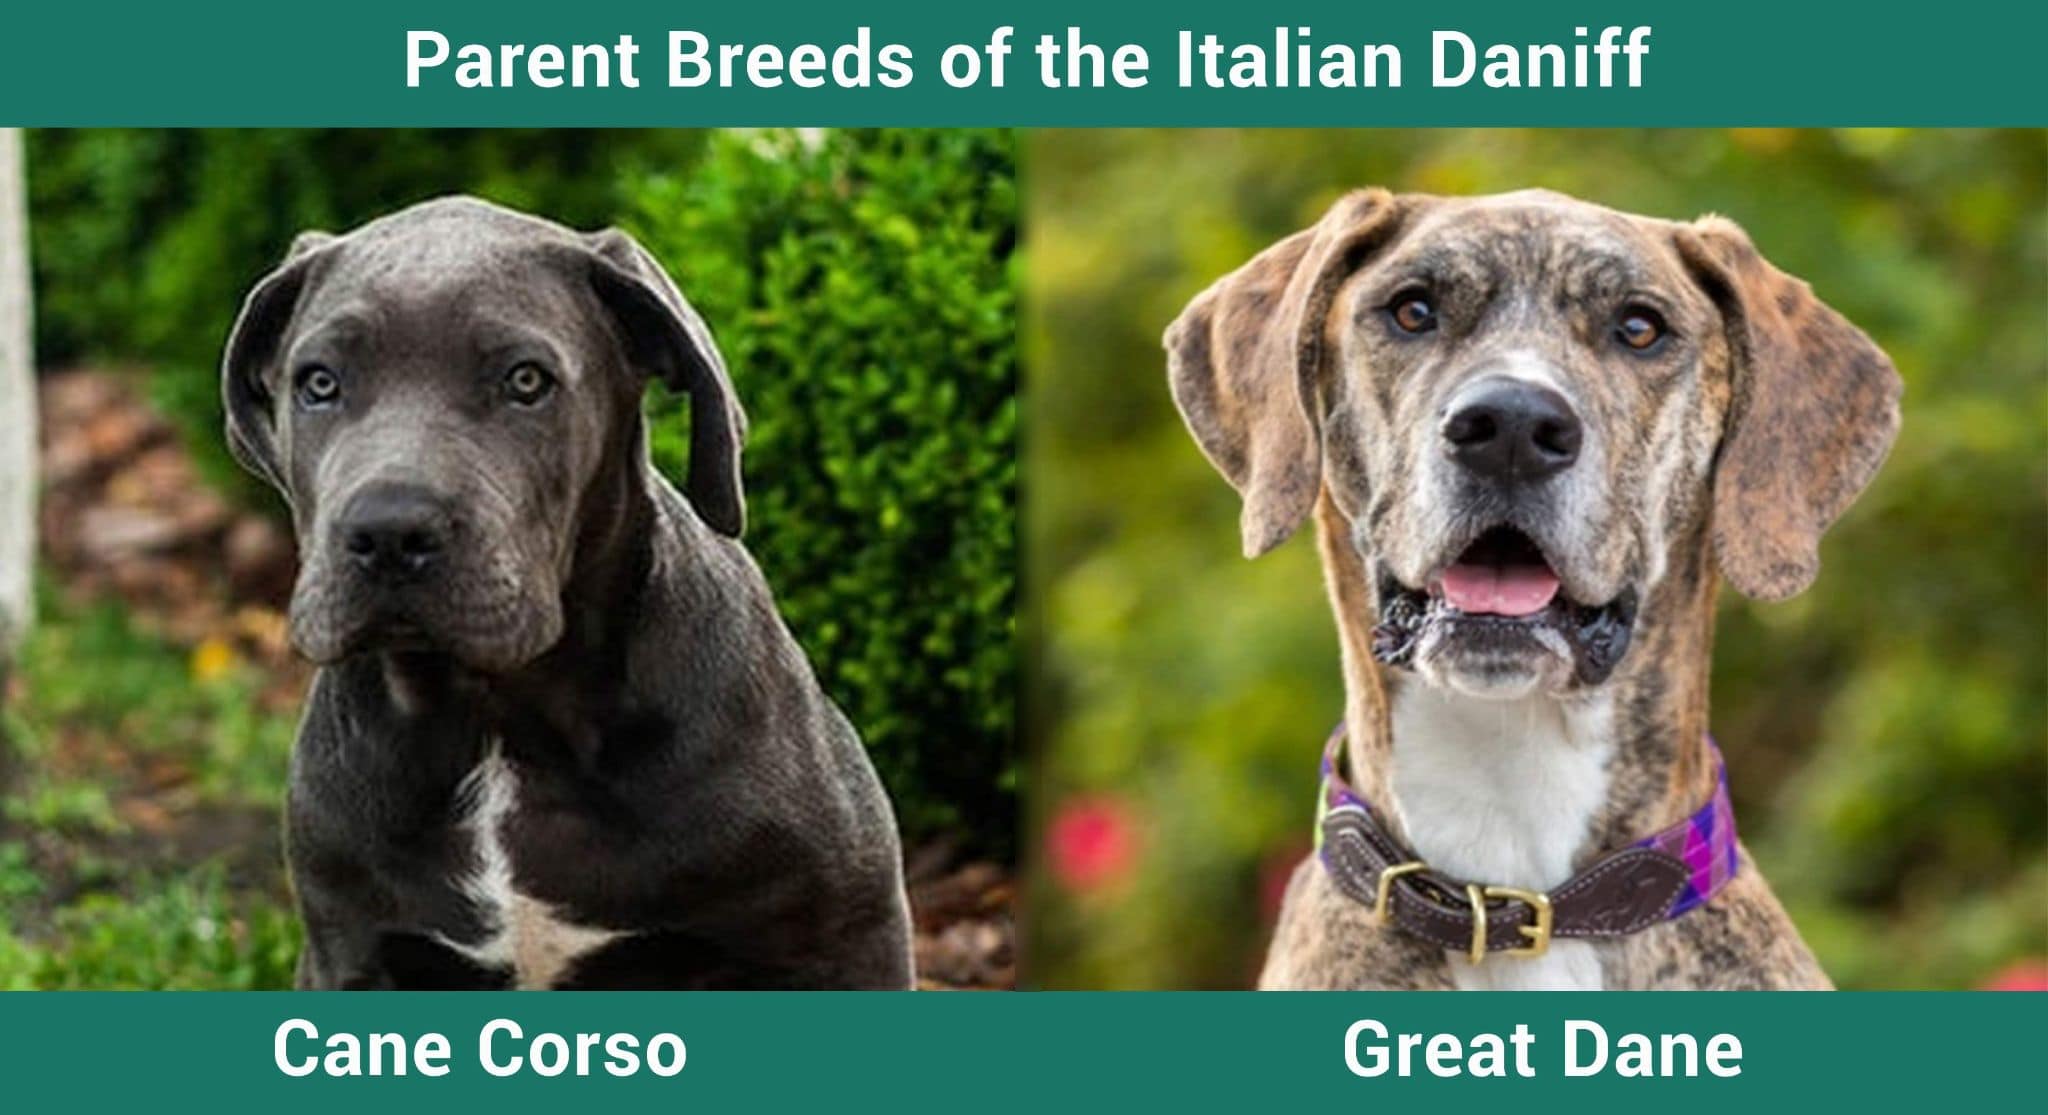 Cane Corso vs Great Dane breed